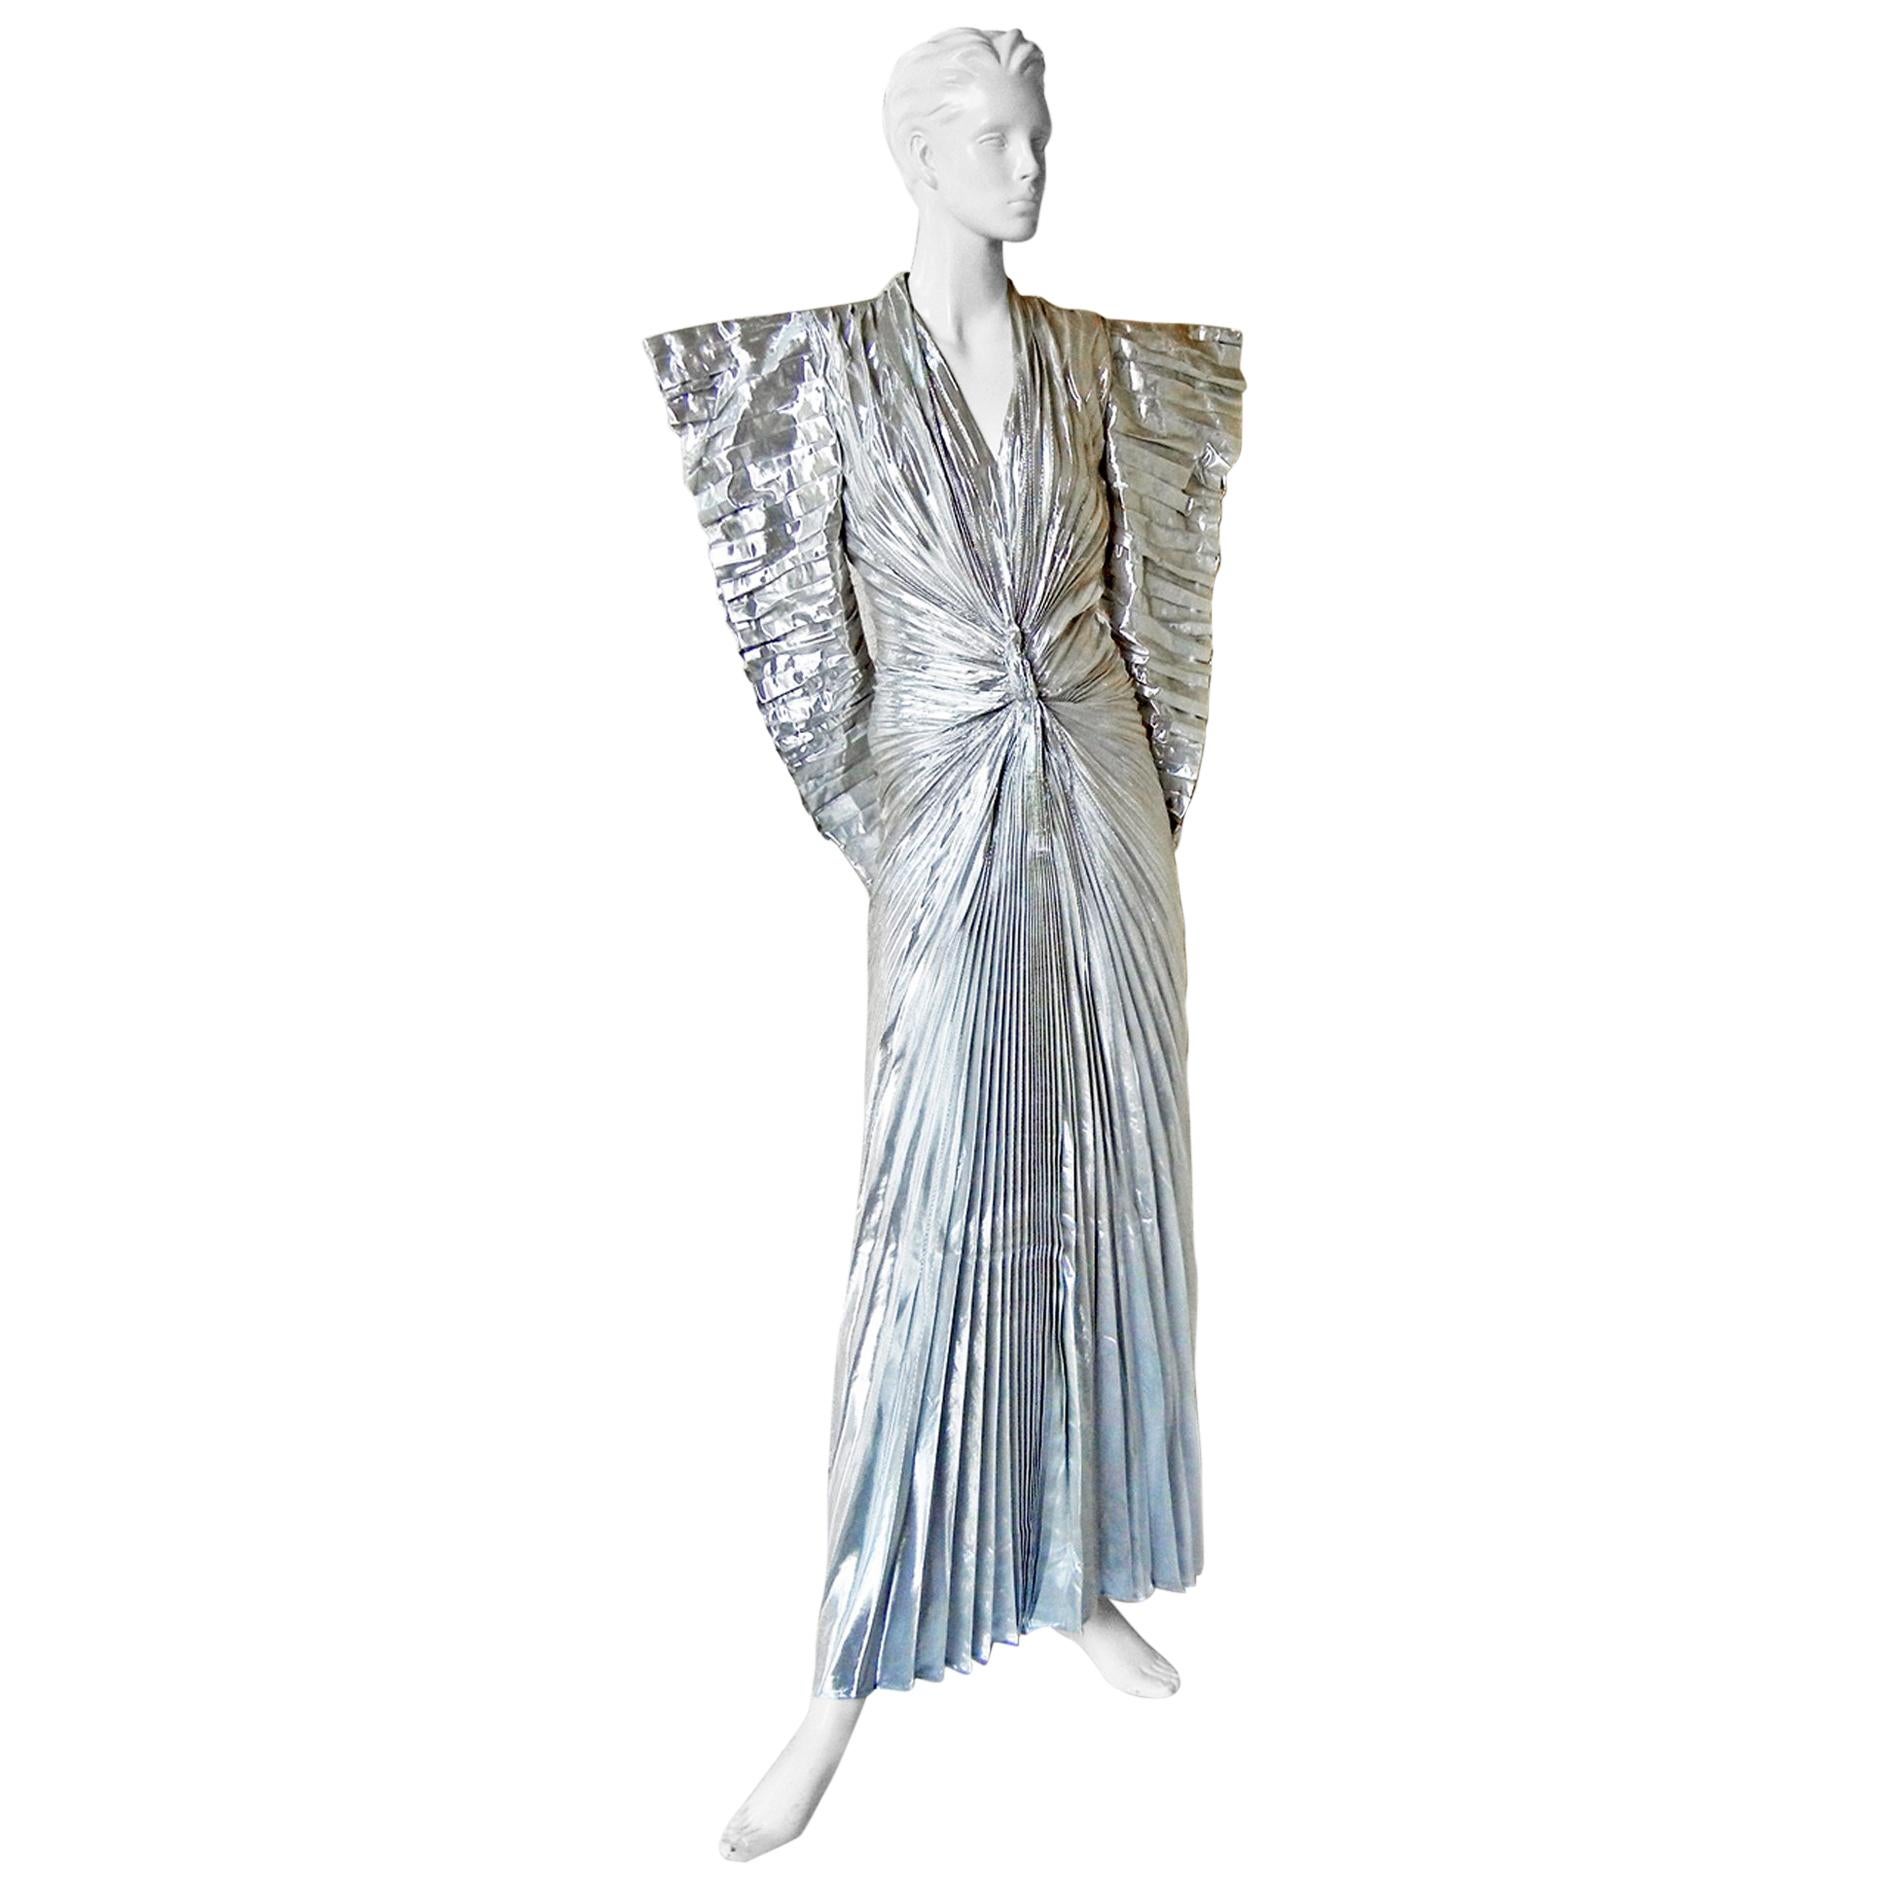 silver lame dress